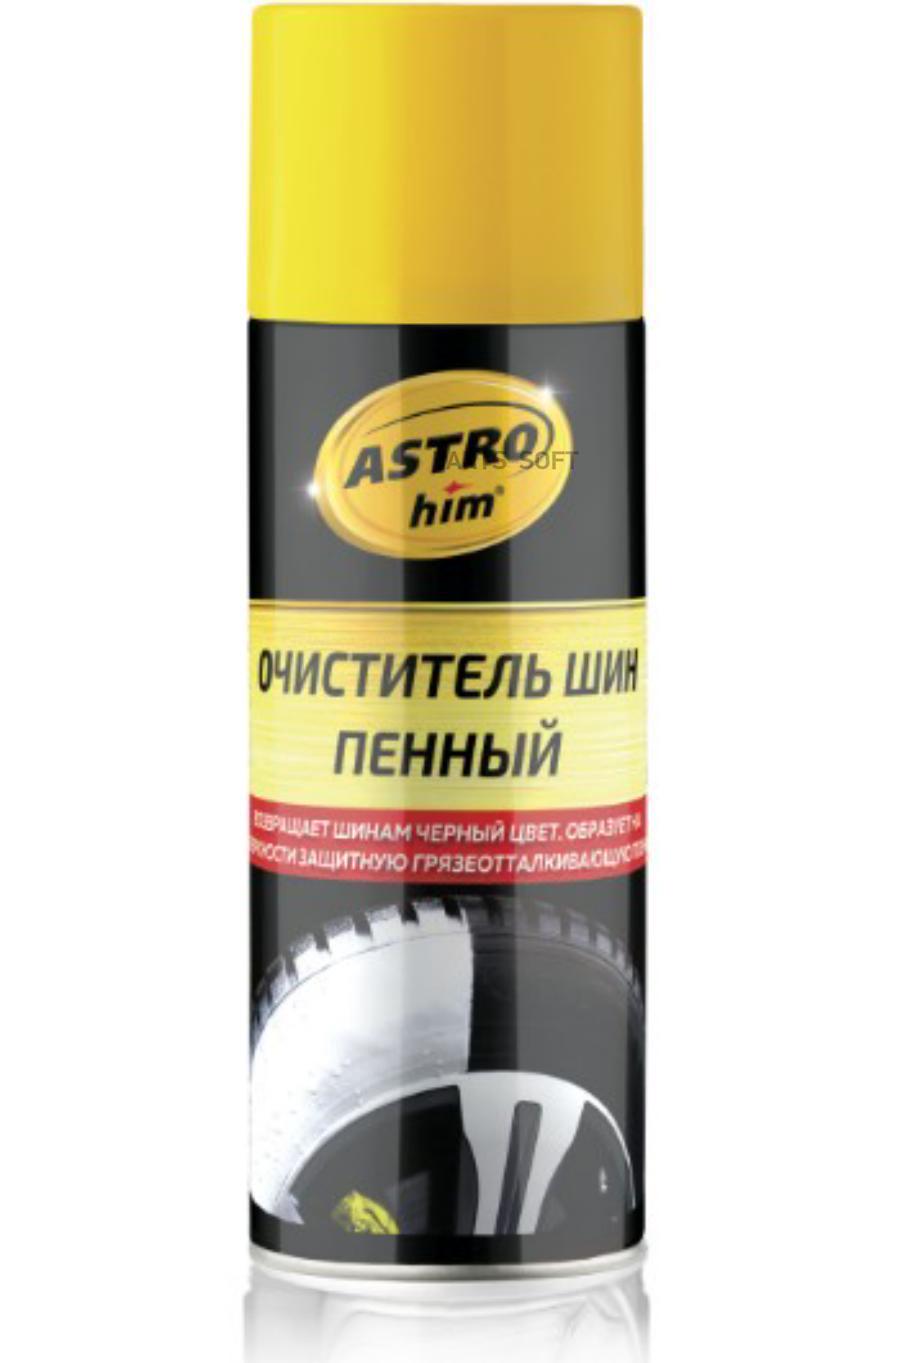 ASTROHIM Очиститель шин пенный аэрозоль 520 мл ASTROhim AC2665 1шт